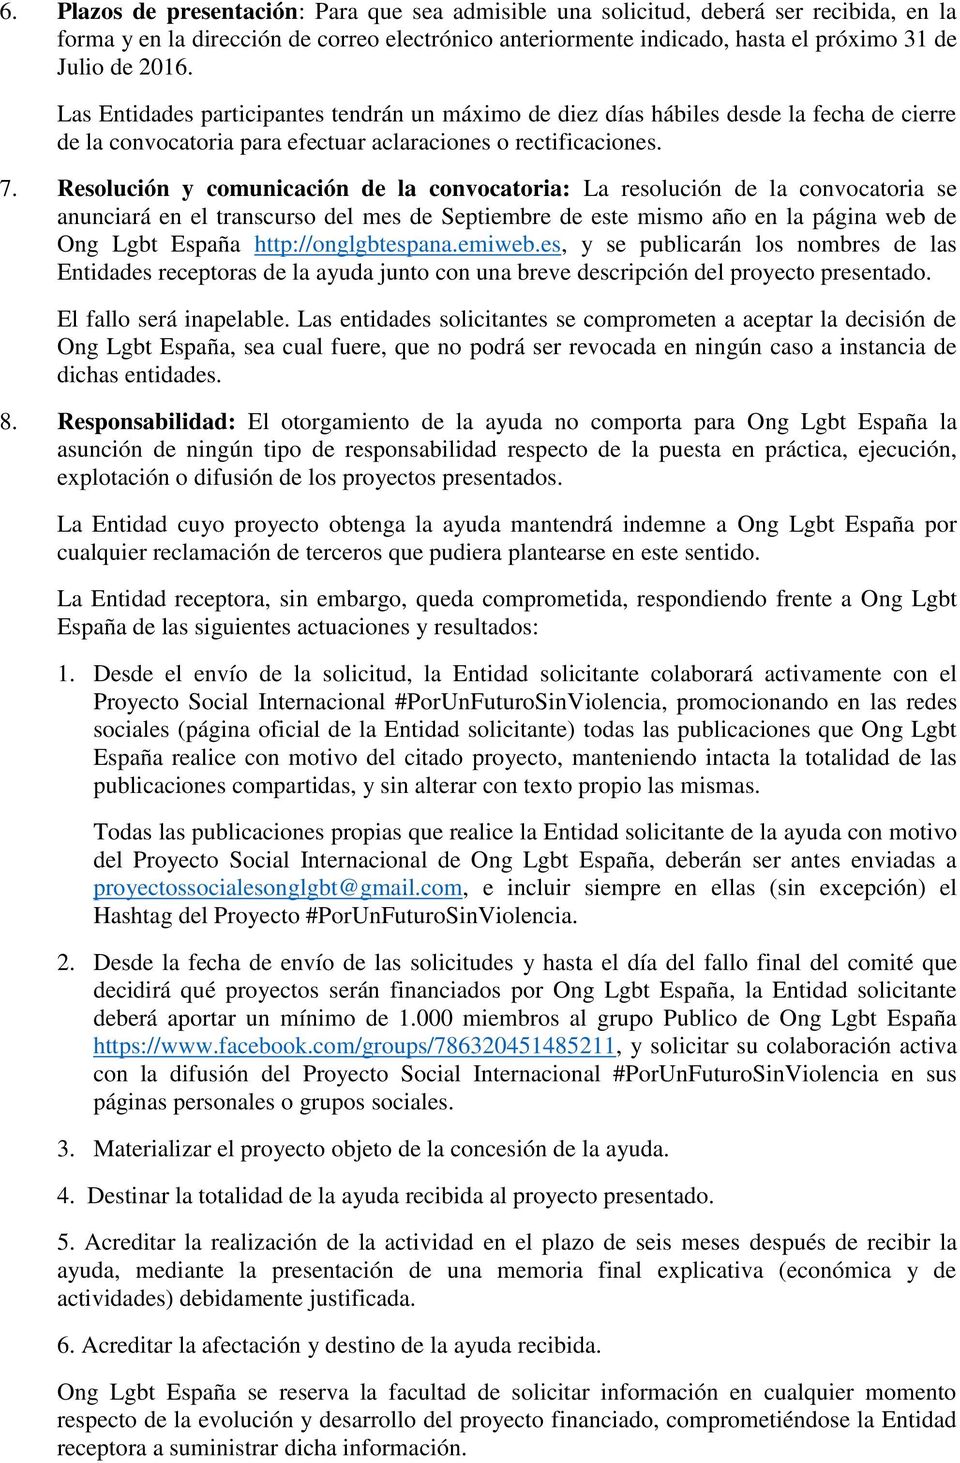 Resolución y comunicación de la convocatoria: La resolución de la convocatoria se anunciará en el transcurso del mes de Septiembre de este mismo año en la página web de Ong Lgbt España